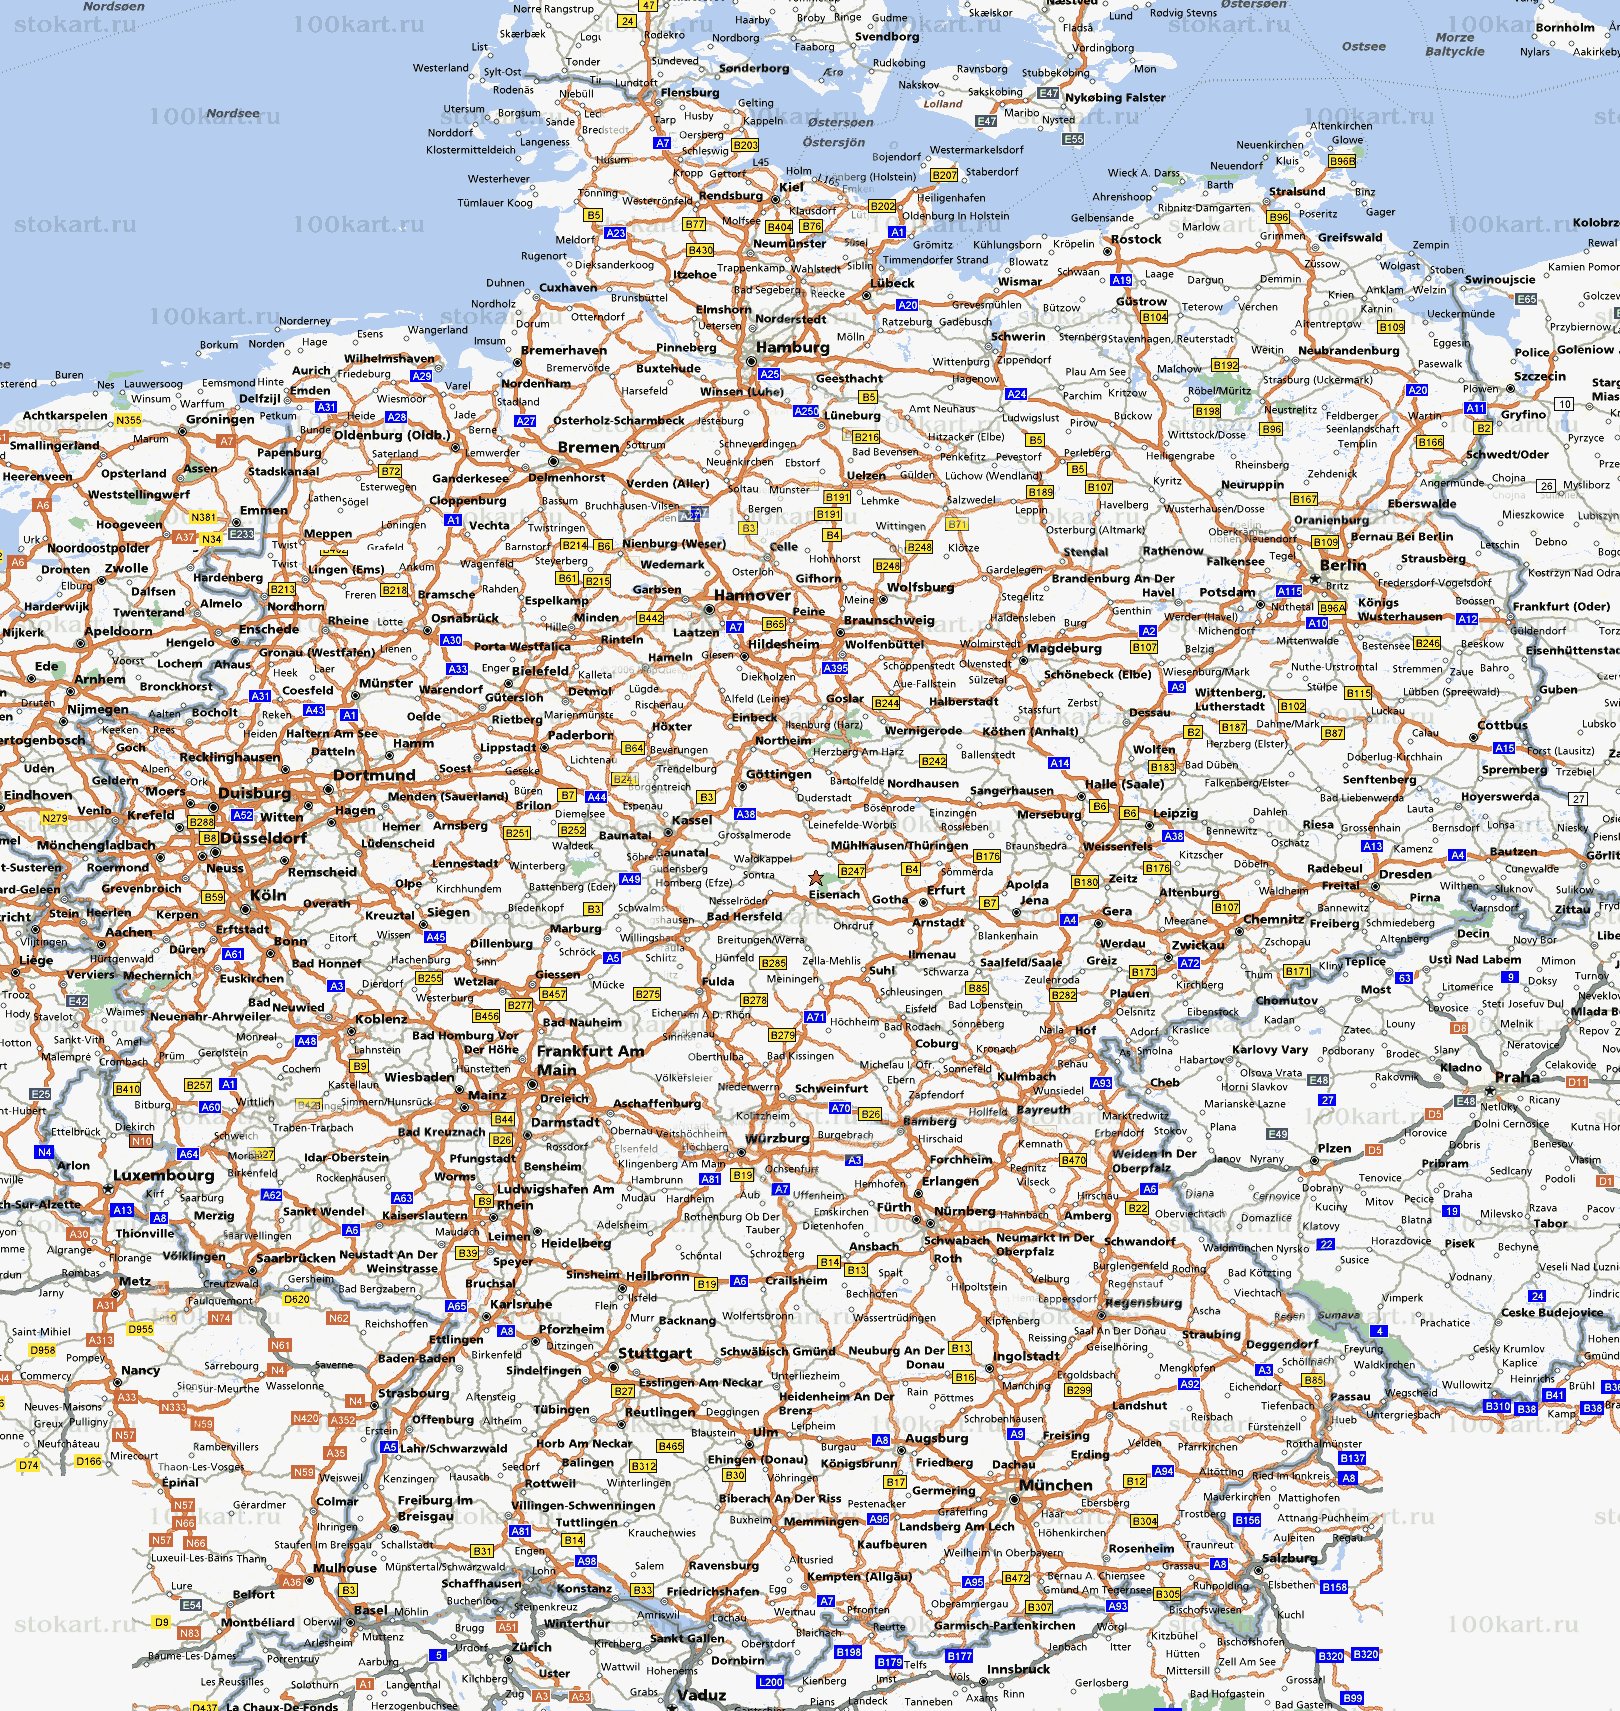 Карты Германии. Подробная карта Германии на русском языке с курортами иотелями